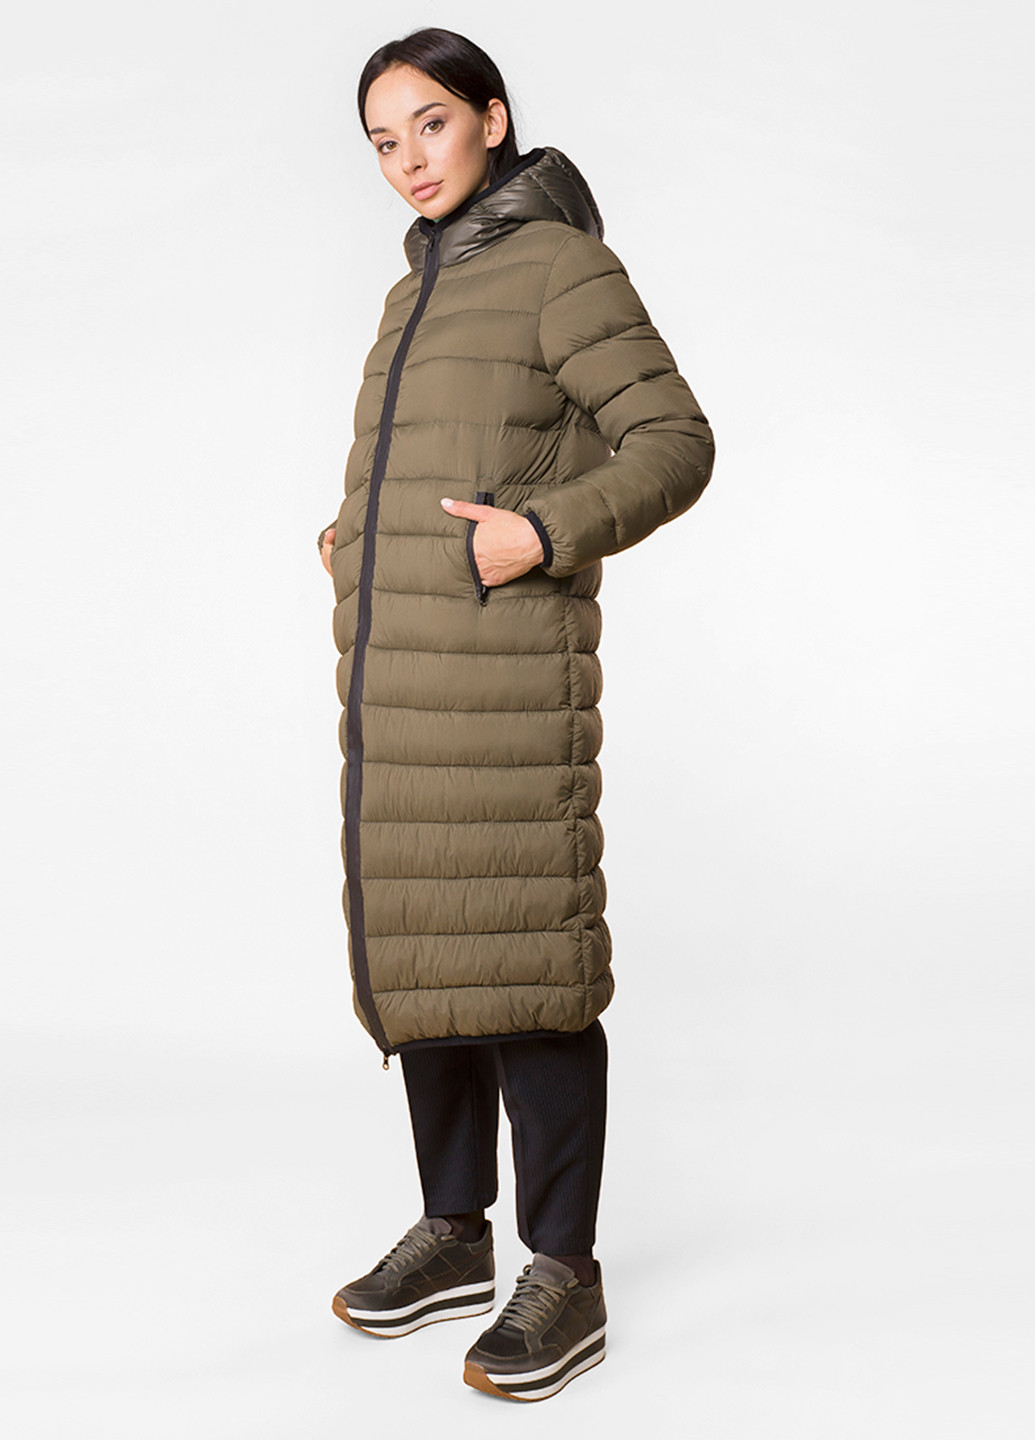 Оливкова (хакі) зимня куртка MR 520